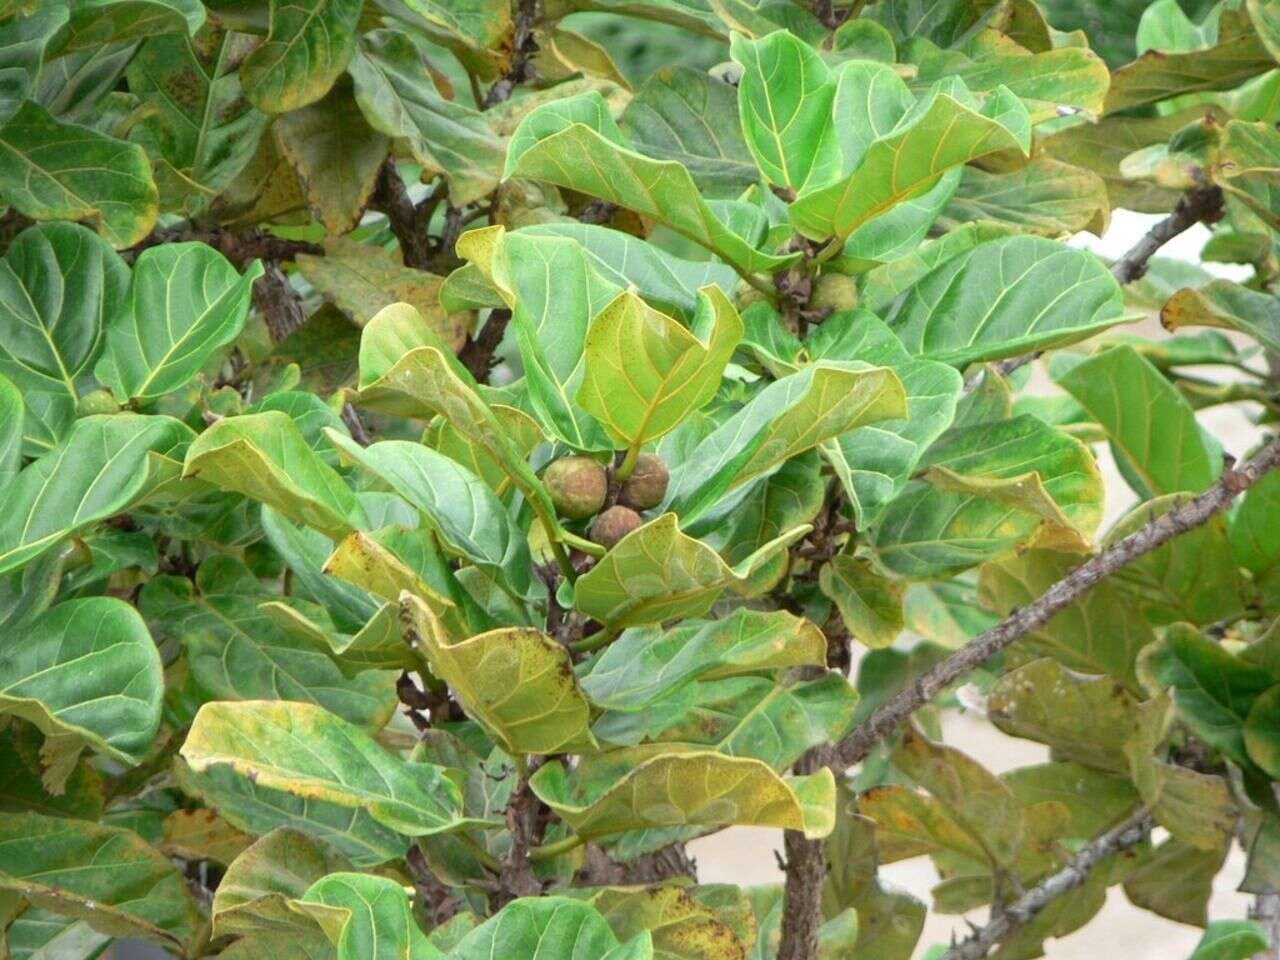 Image of fiddle-leaf fig